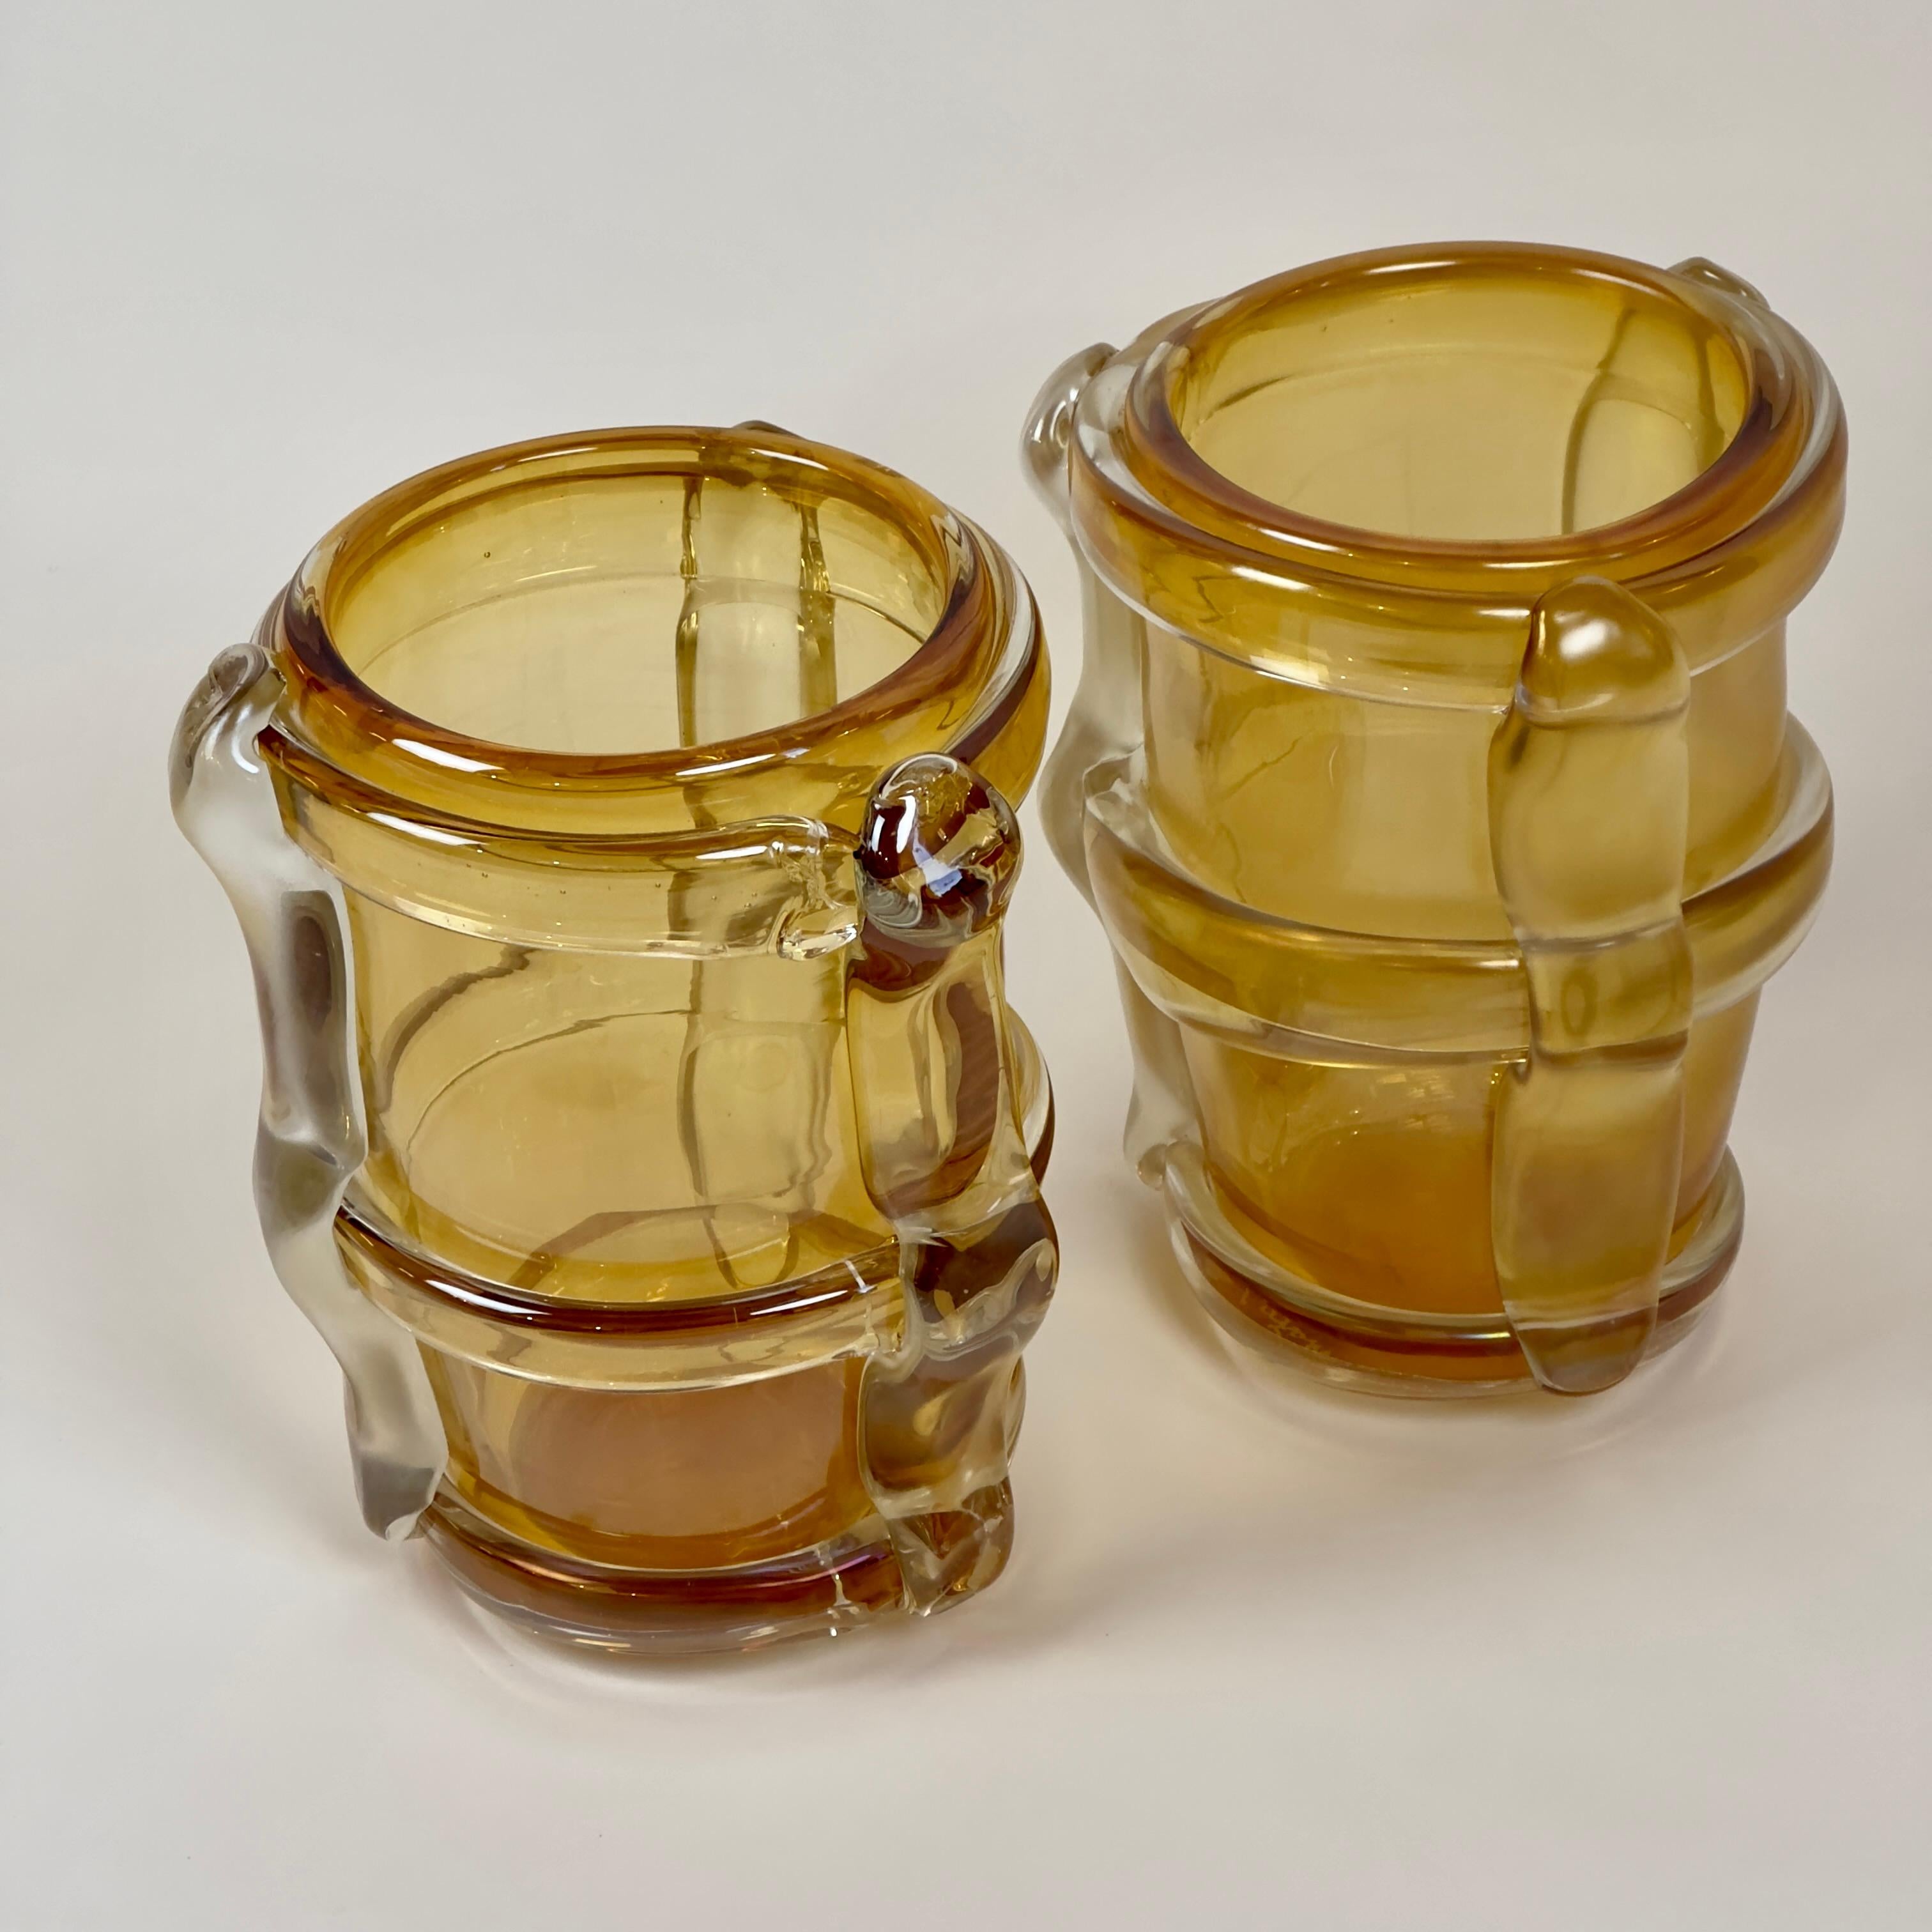 Paar gelbe Murano-Kunstglasvasen aus dem späten 20. Jahrhundert mit gelben Applikationen aus transparentem und mattem Murano-Glas. 
Eine Vase wurde absichtlich transparenter gestaltet als die andere. Hince, eine Vase hat eine transparente klare